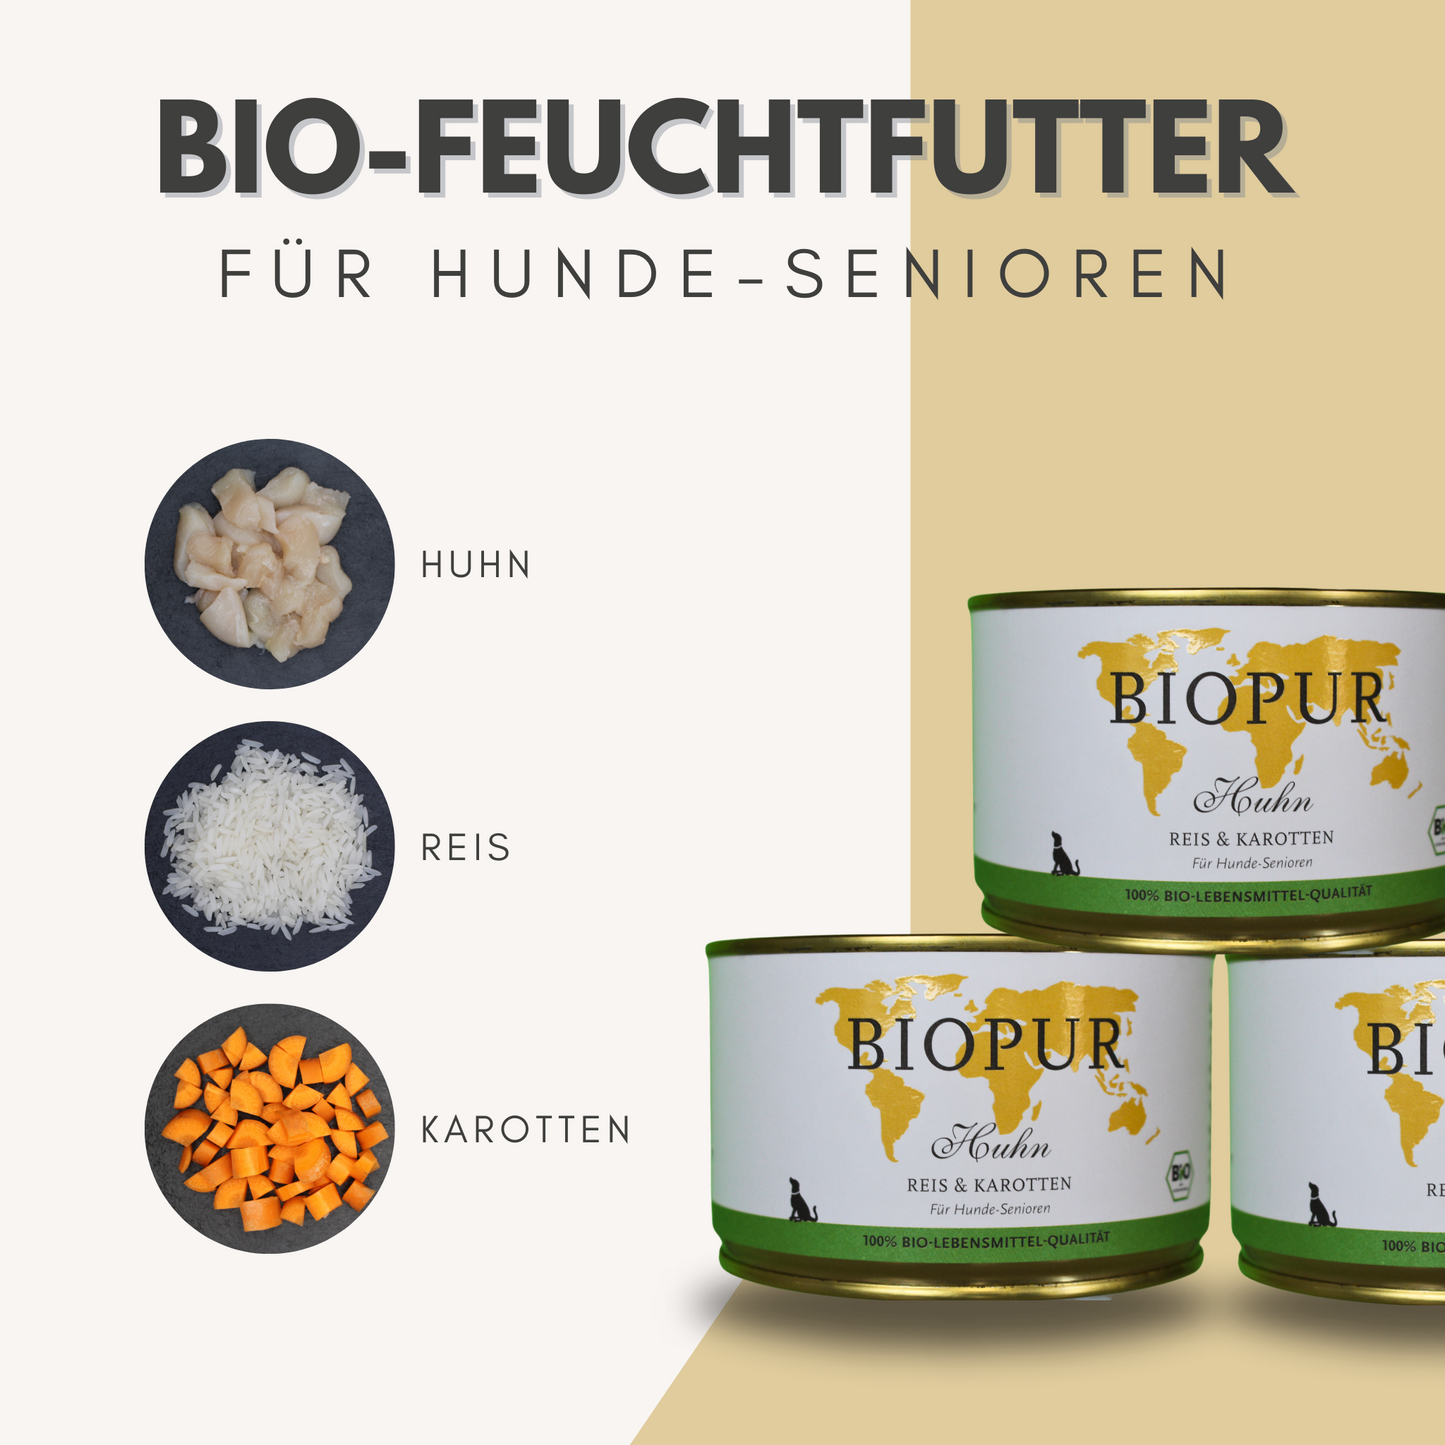 Bio-Alleinfutter - Huhn, Reis & Karotten für Hunde-Senioren